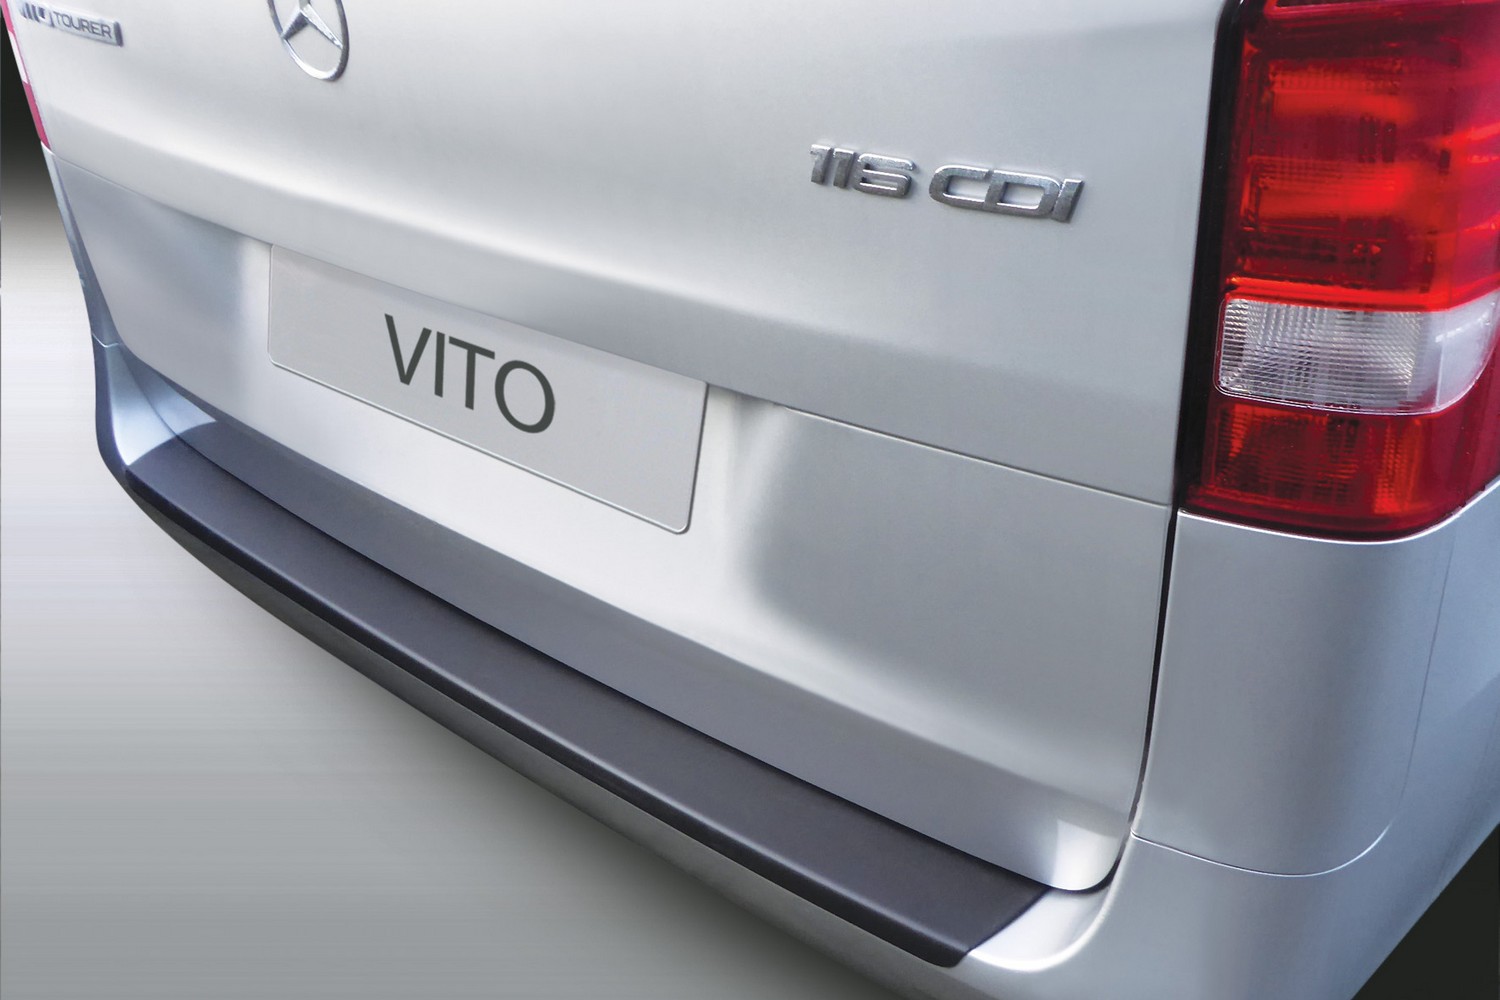 Ladekantenschutz für Mercedes V Klasse Vito W447 2014-2022 schwarz